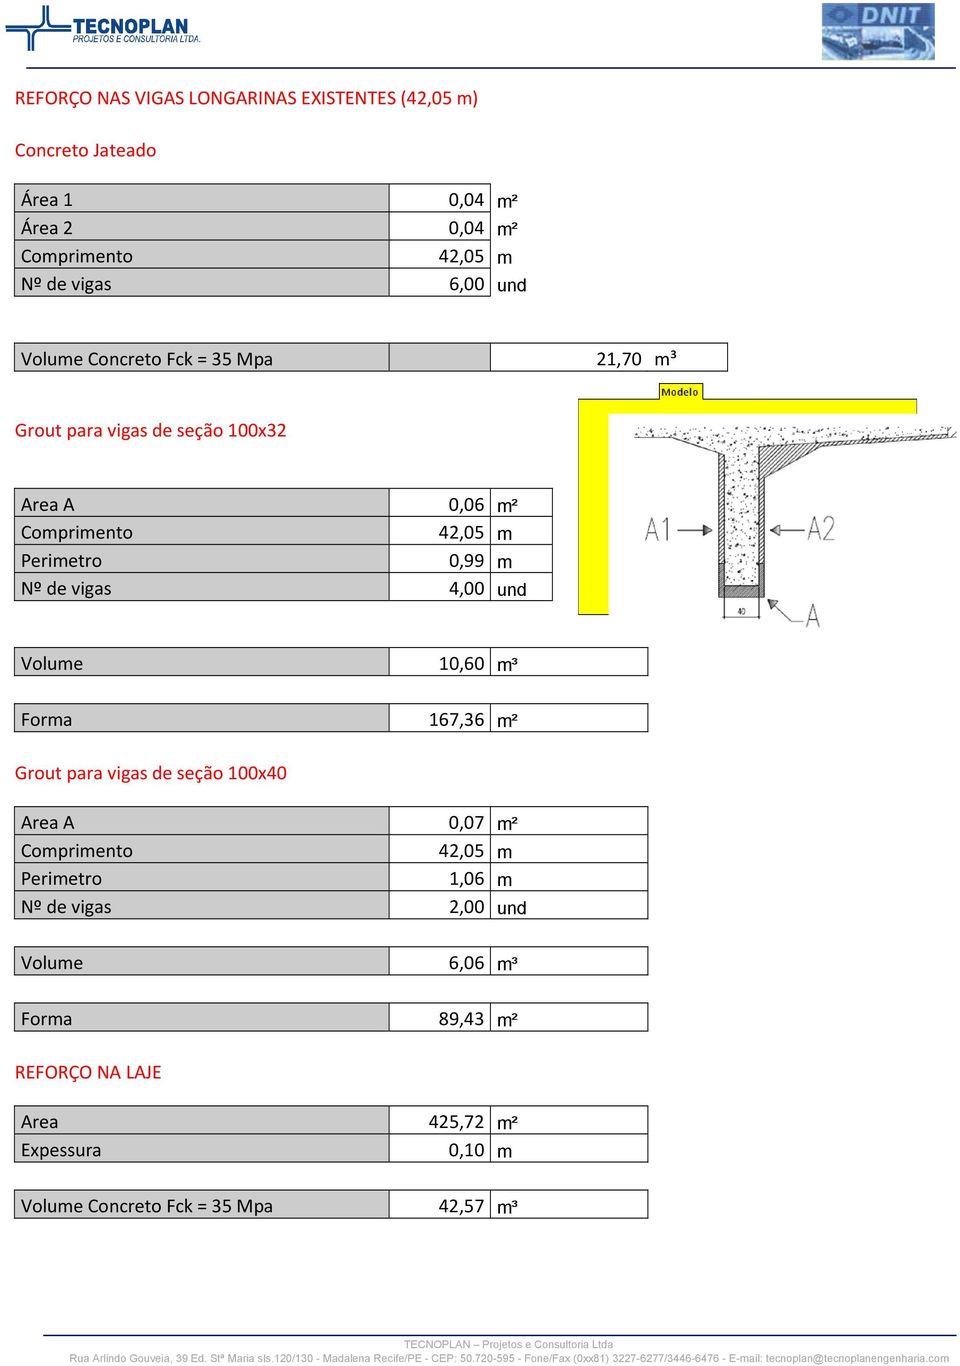 4,00 und Volume 10,60 m³ Forma 167,36 m² Grout para vigas de seção 100x40 Area A 0,07 m² Perimetro 1,06 m Nº de